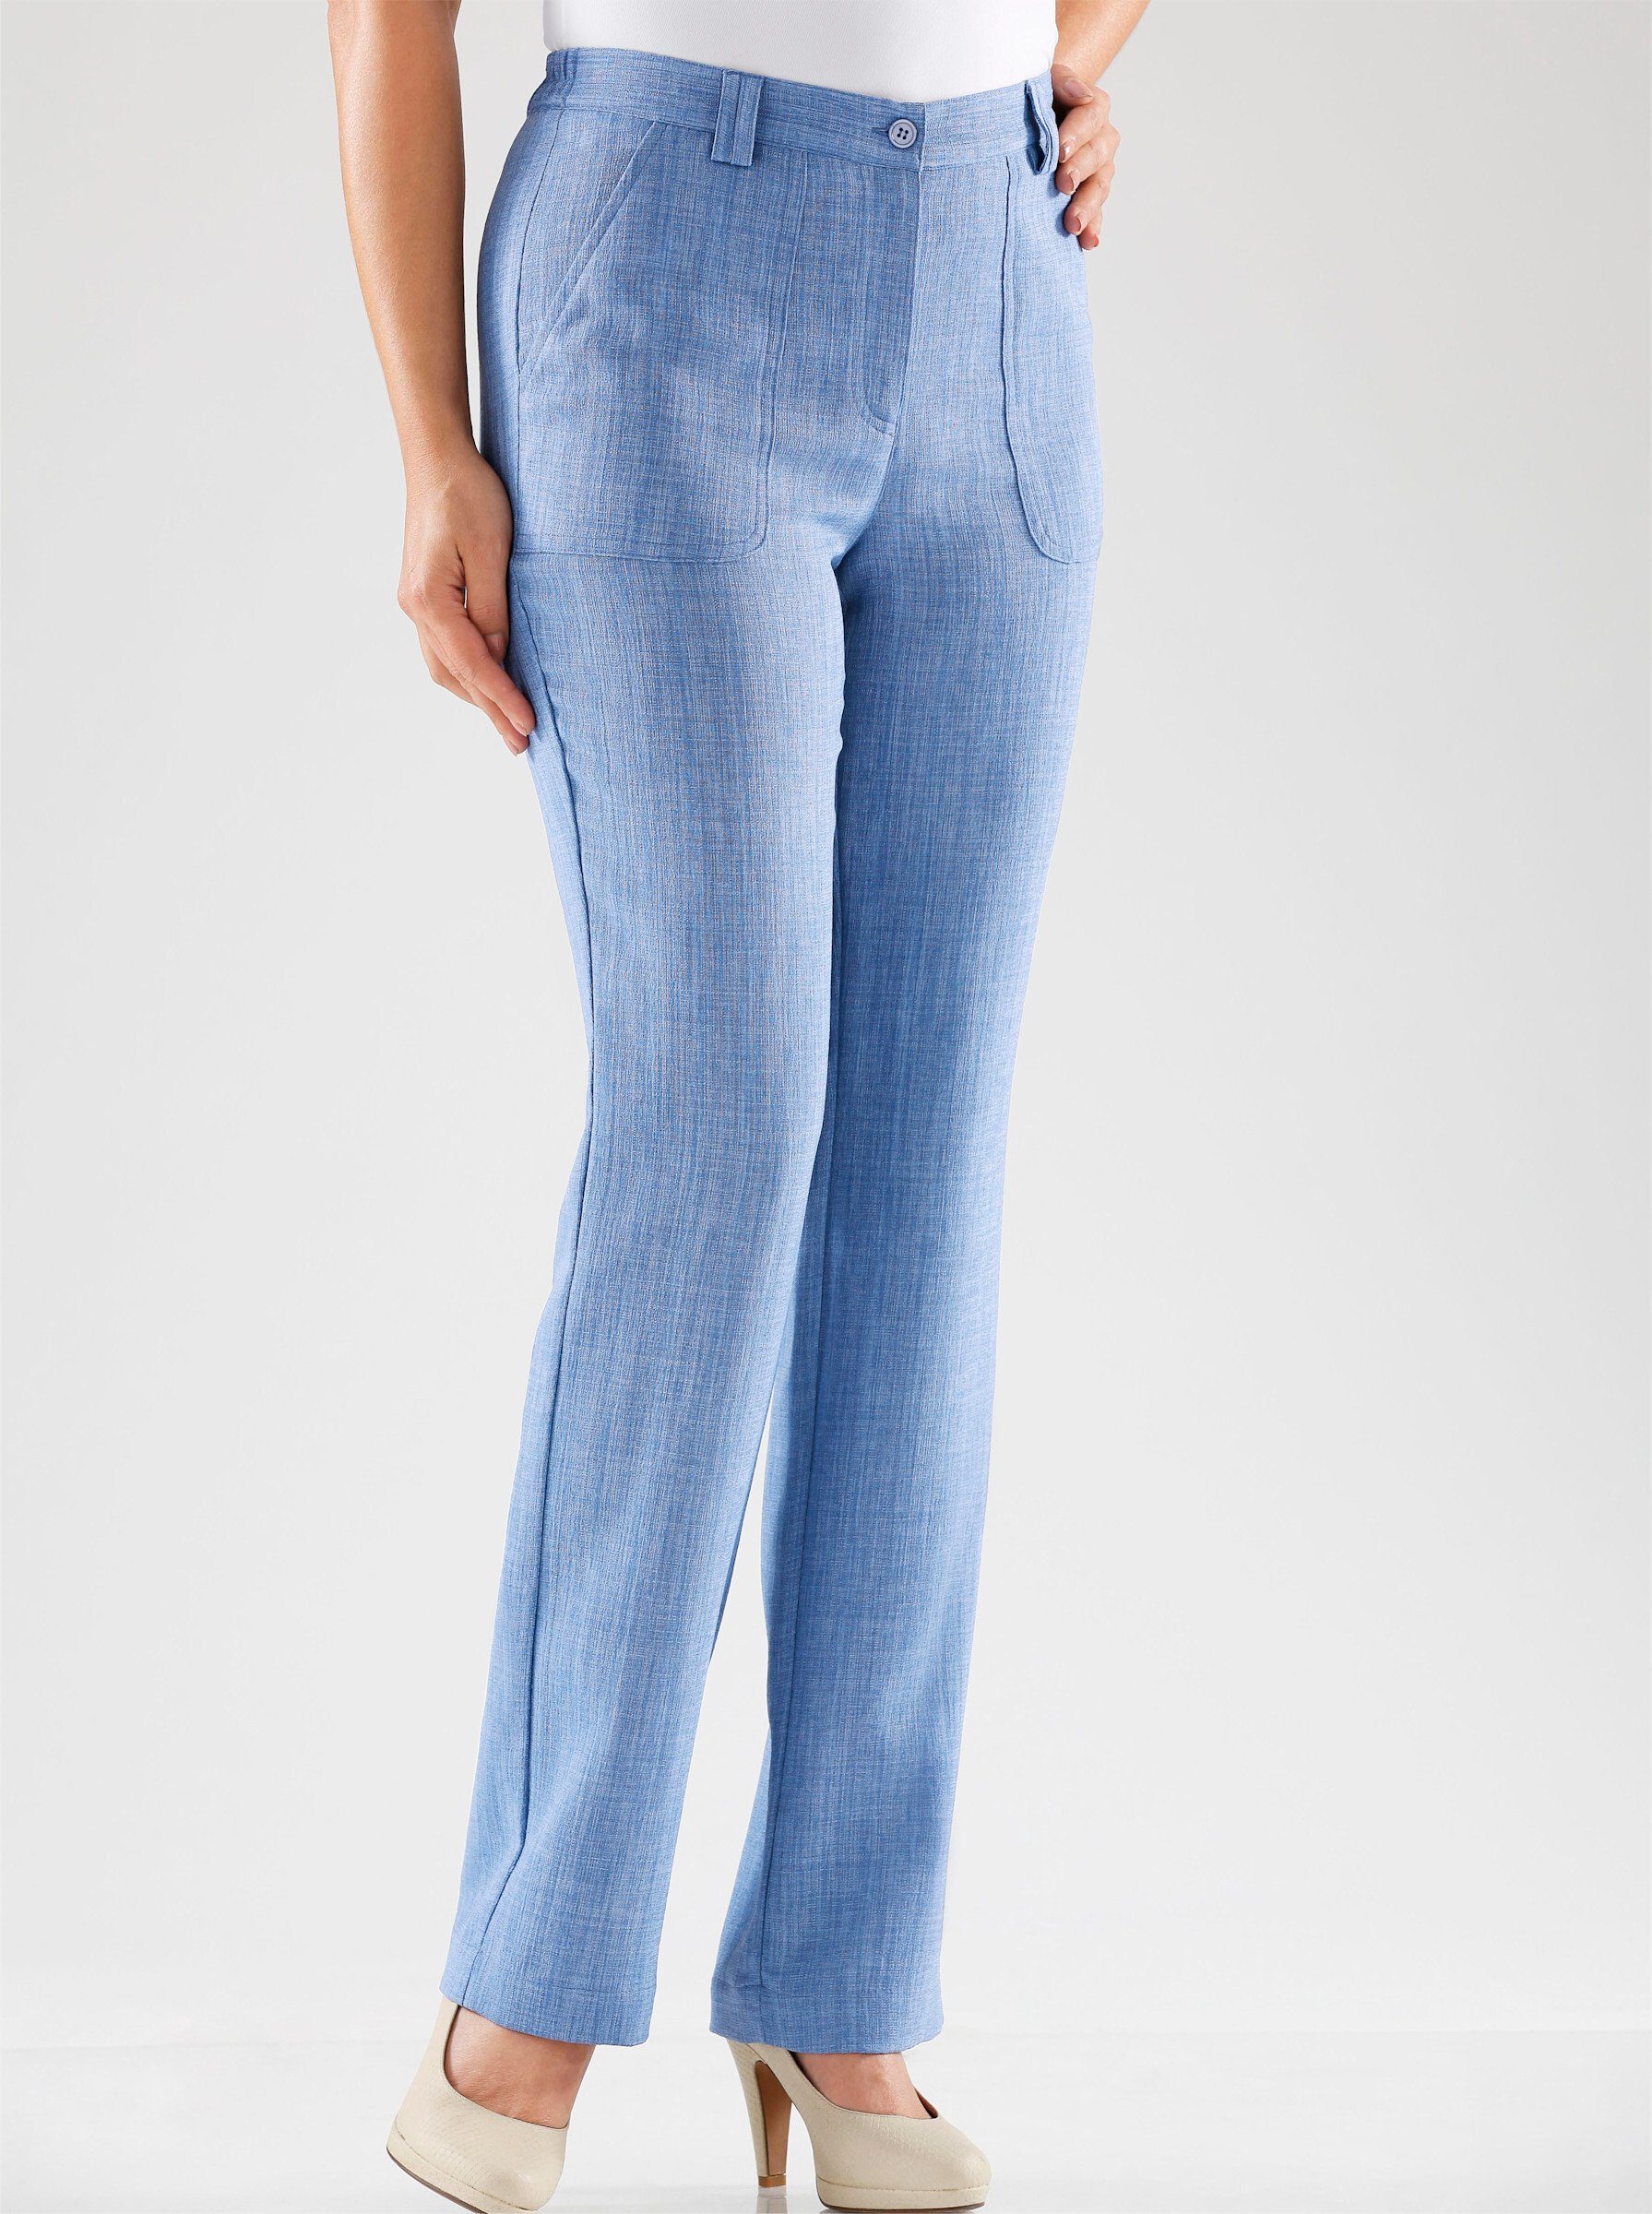 WITT WEIDEN Jerseyhose Innenbeinlänge ca. 72 cm taubenblau | Weite Hosen